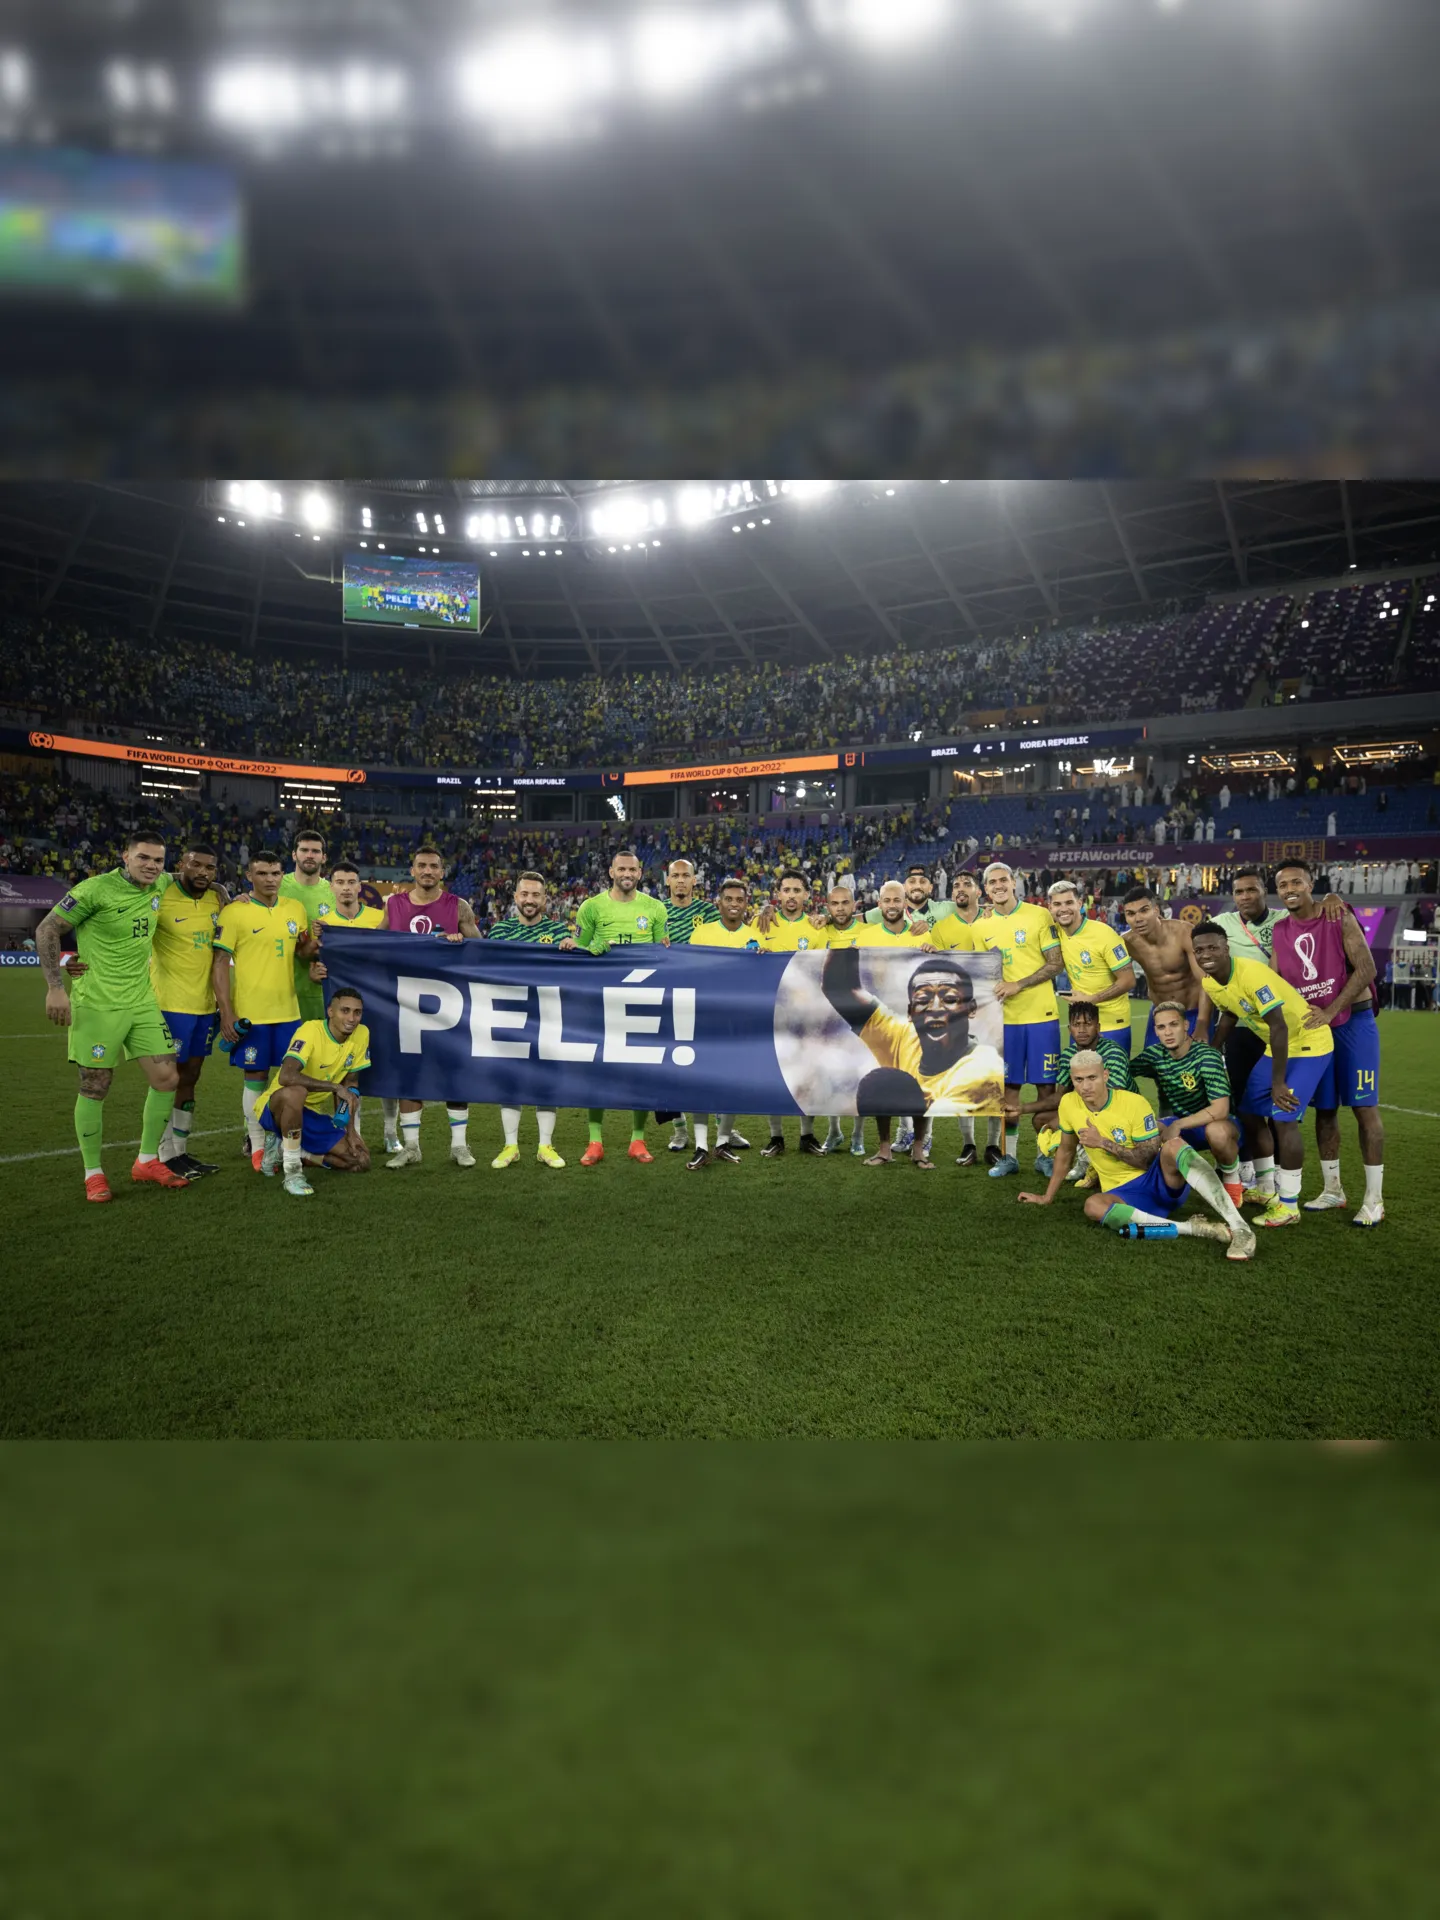 Jogadores brasileiros estenderam faixa em homenagem ao Pelé após a goleada sobre a Coreia do Sul na Copa do Mundo